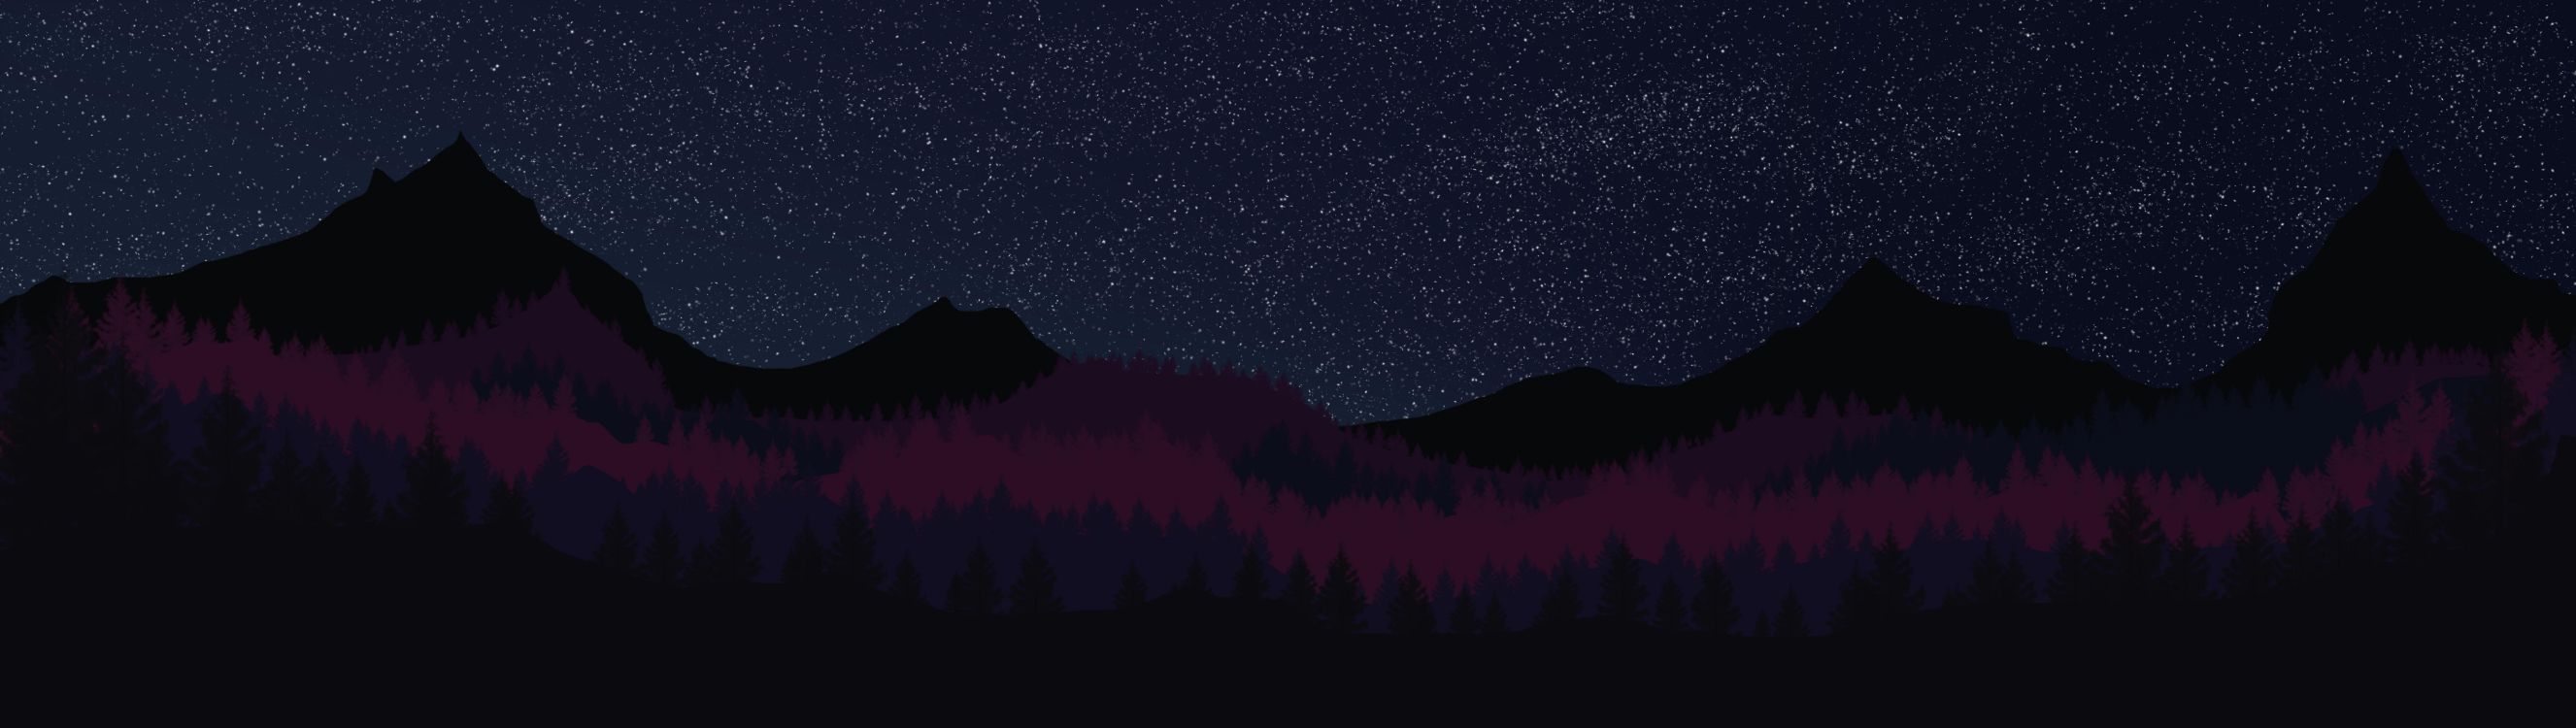 Silueta de Árboles Bajo la Noche Estrellada. Wallpaper in 12000x3392 Resolution